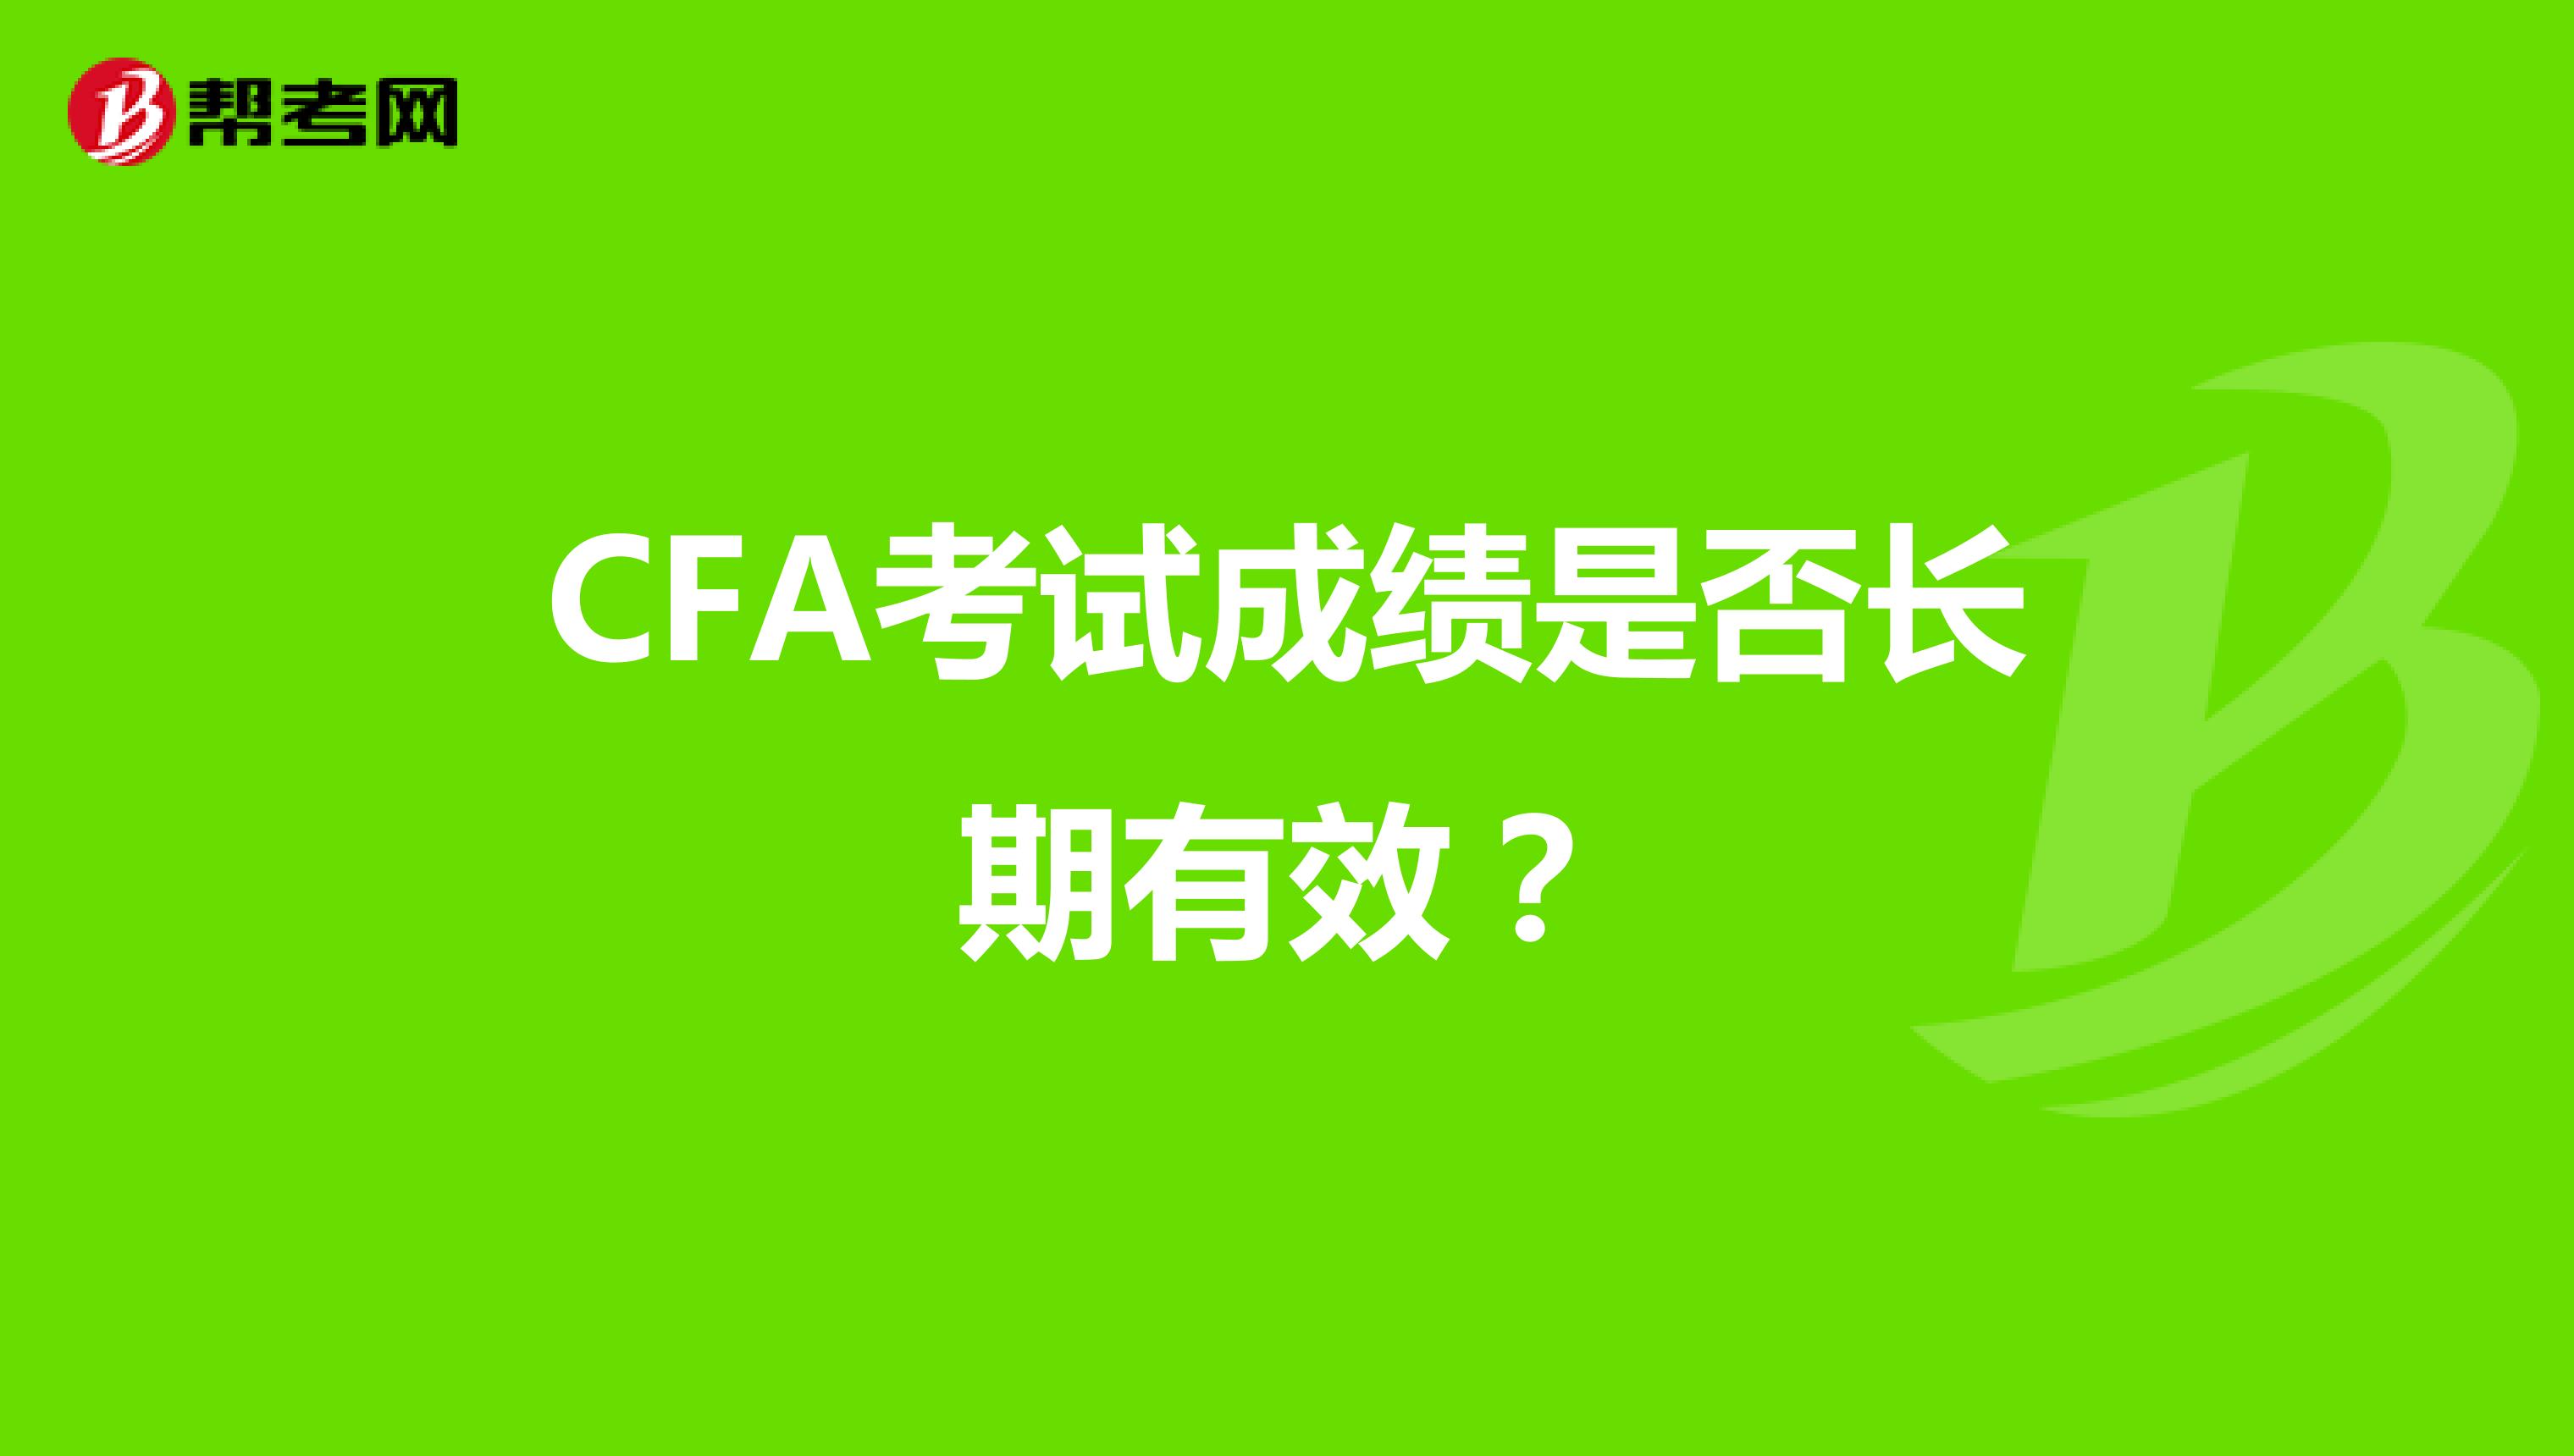 CFA考试成绩是否长期有效？